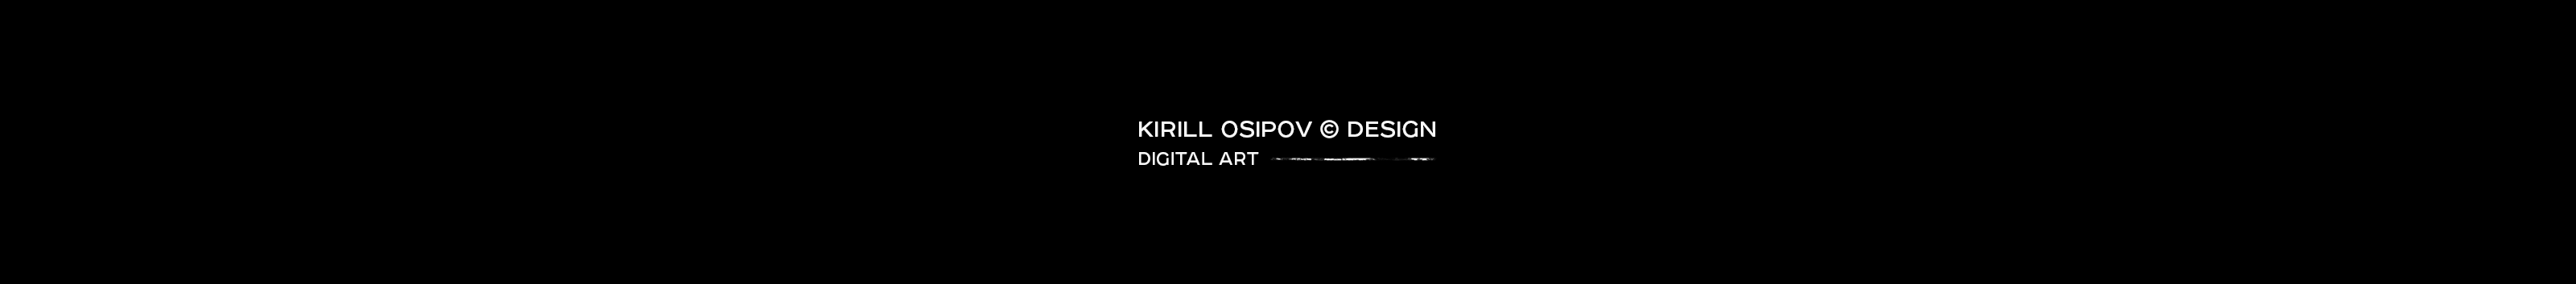 Kirill Osipov's profile banner